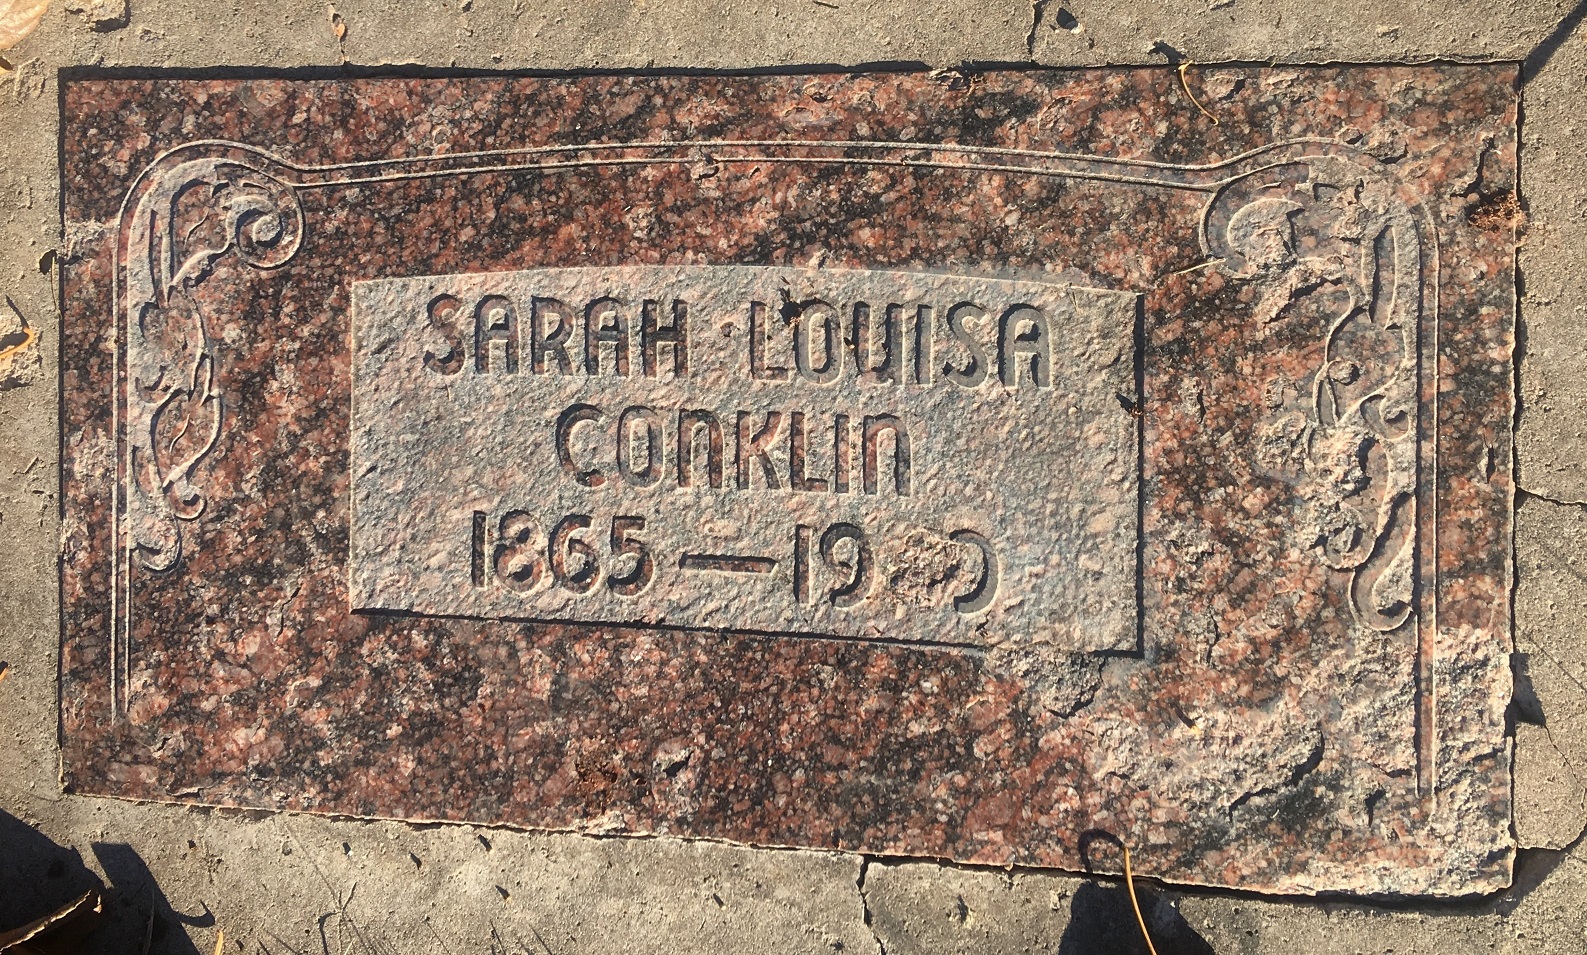 The gravestone of Sarah Louisa Conklin